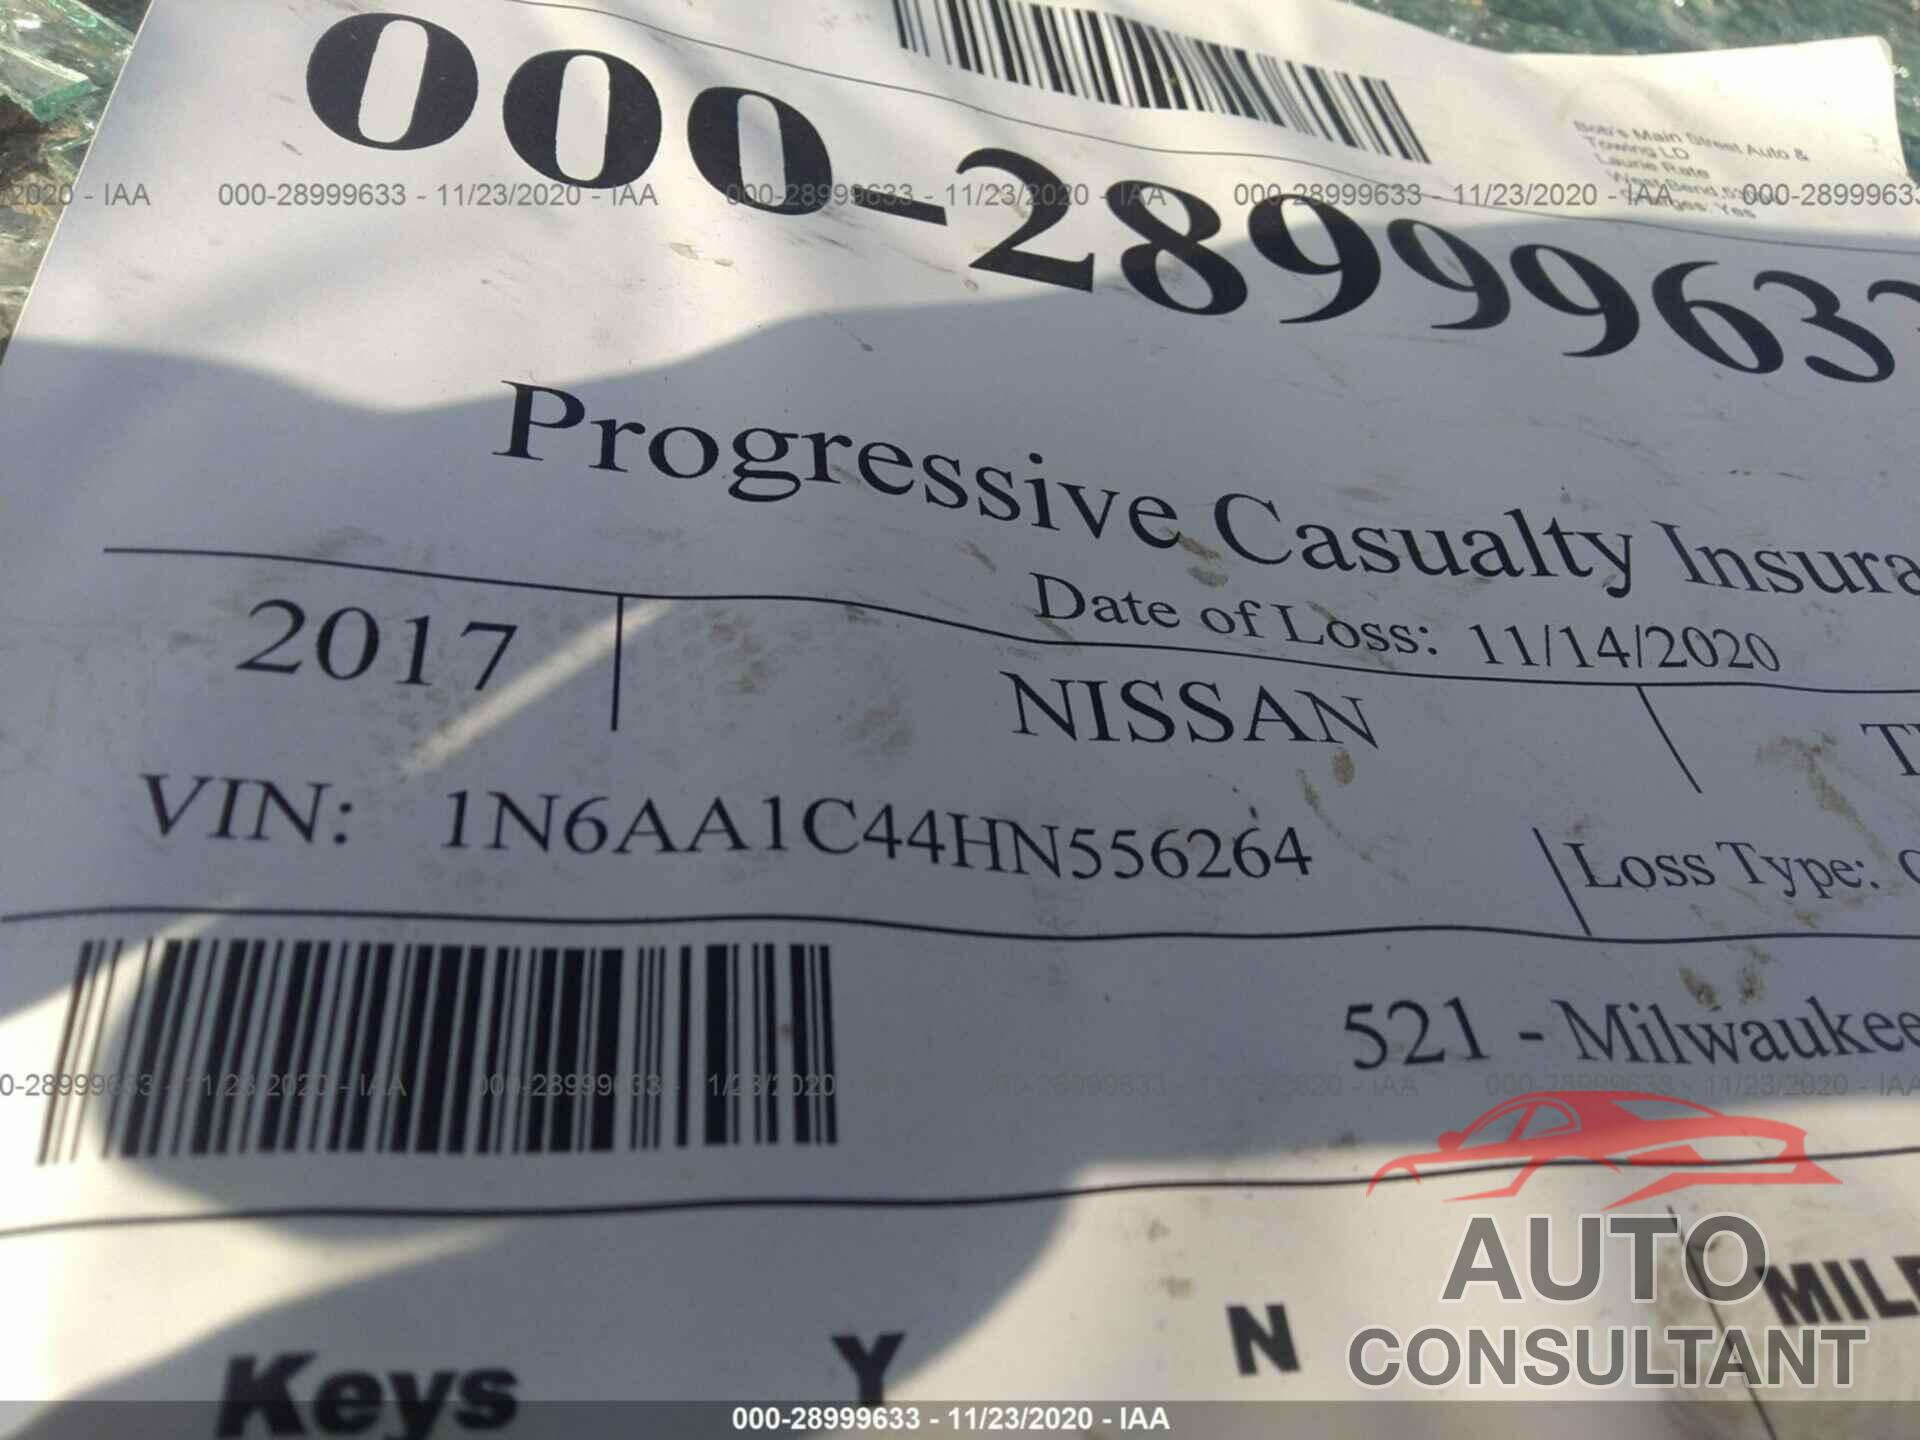 NISSAN TITAN XD 2017 - 1N6AA1C44HN556264